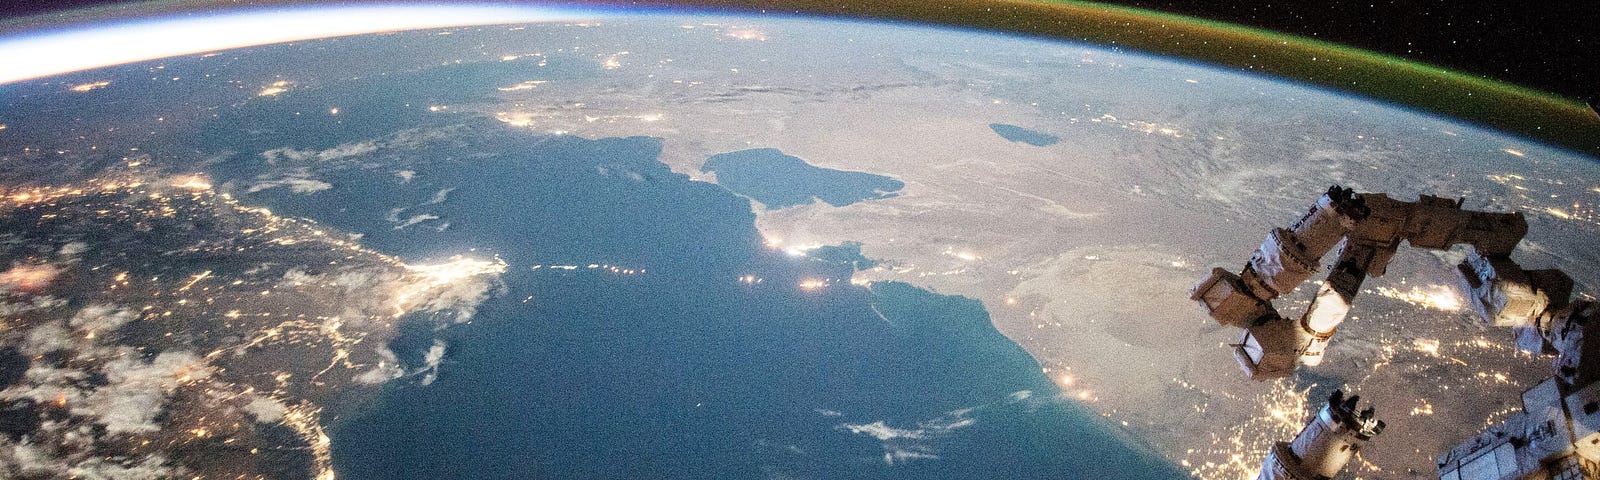 NASA image of the Caspian sea’s southern shore at dusk